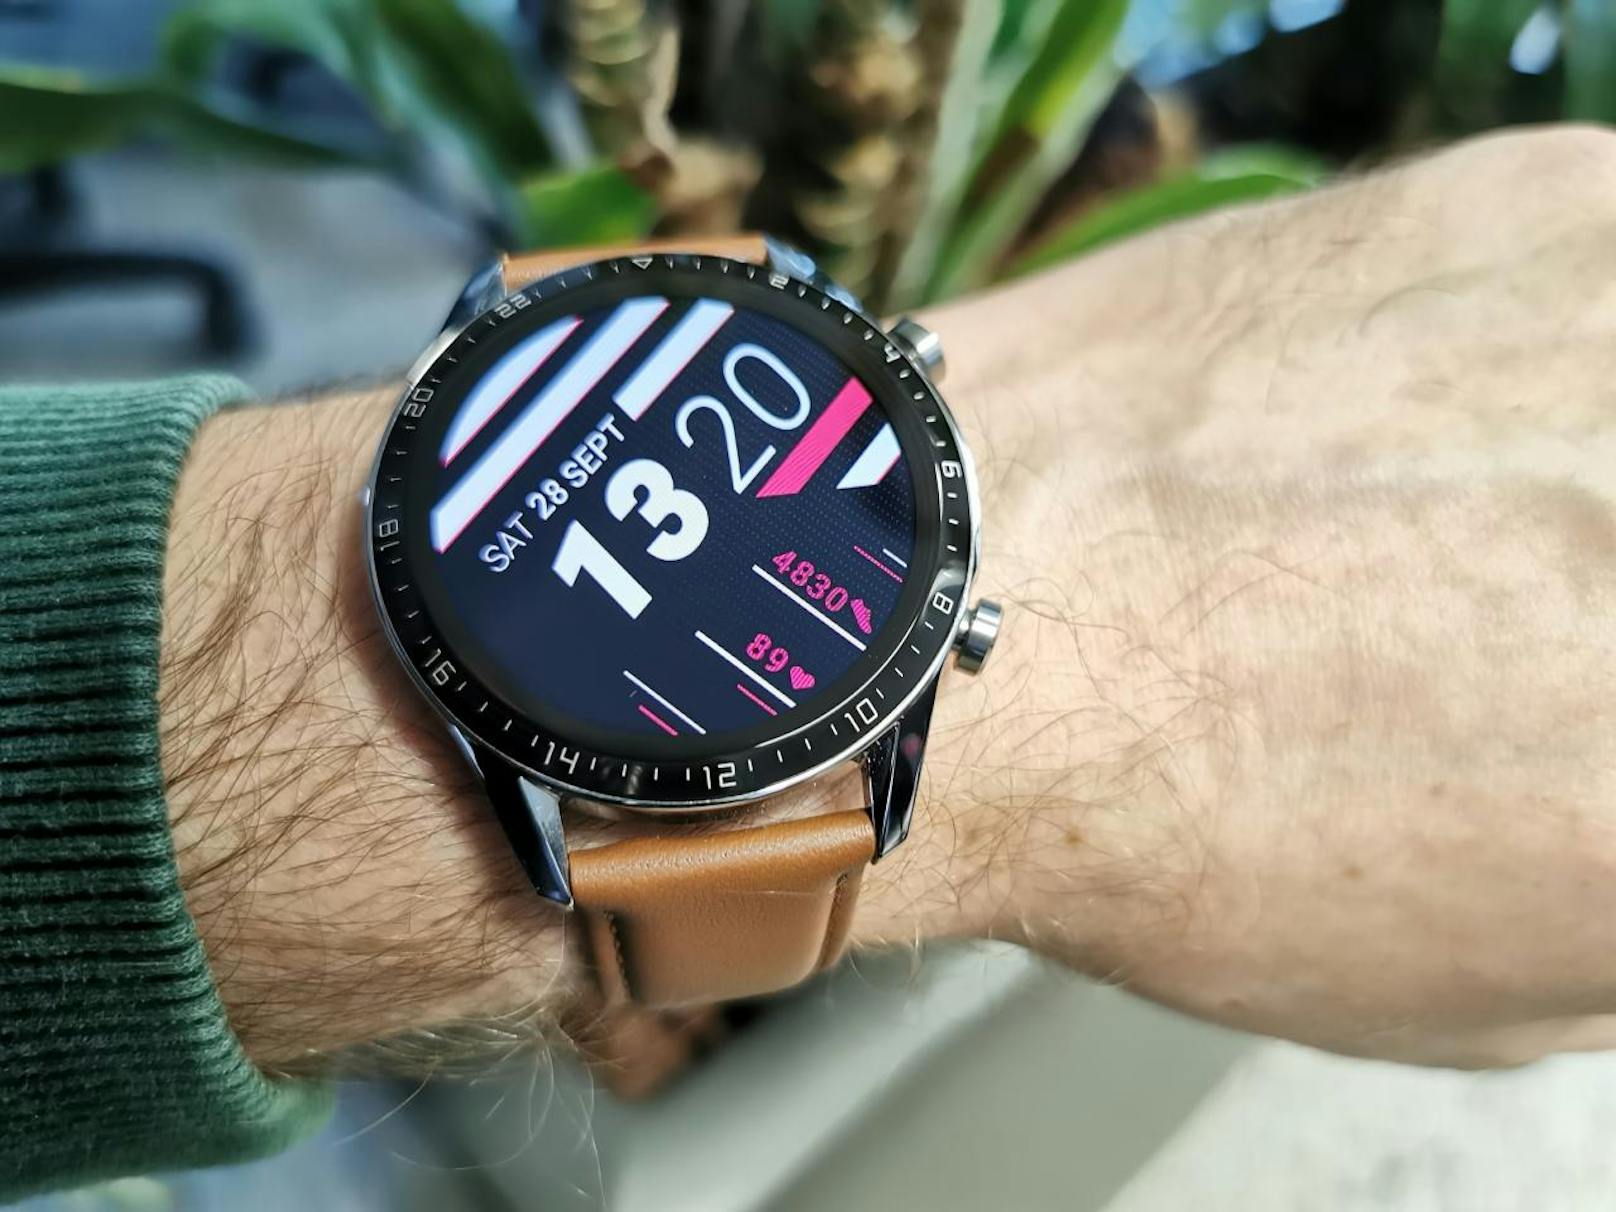 Die Huawei Watch GT 2 ist eine konsequente Weiterentwicklung des Vorgängers. Einziges Minus ist für mich weiter die fehlende Möglichkeit, selbst Apps zu installieren.